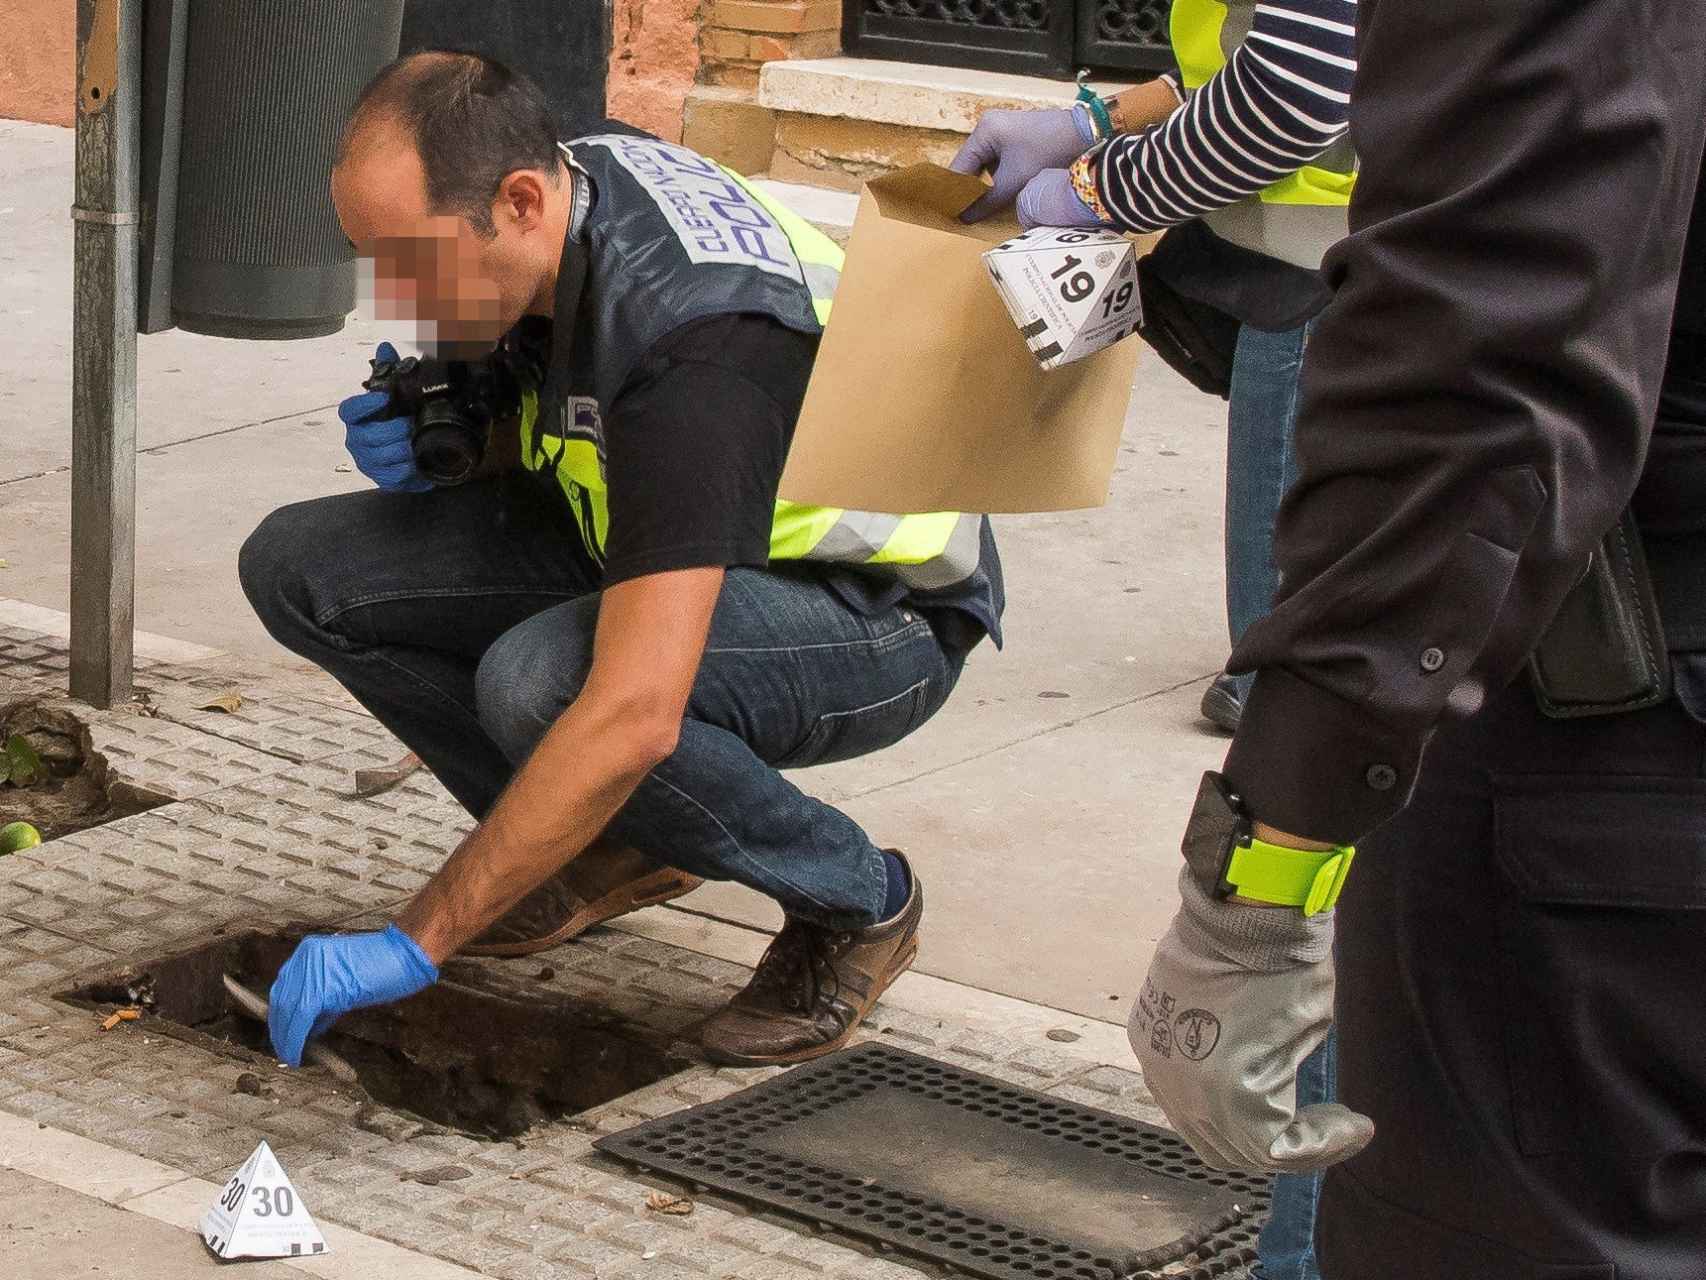 Efectivos de la Policía Nacional encontraro un cuchillo durante una inspección de alcantarillas en los alrededores del piso